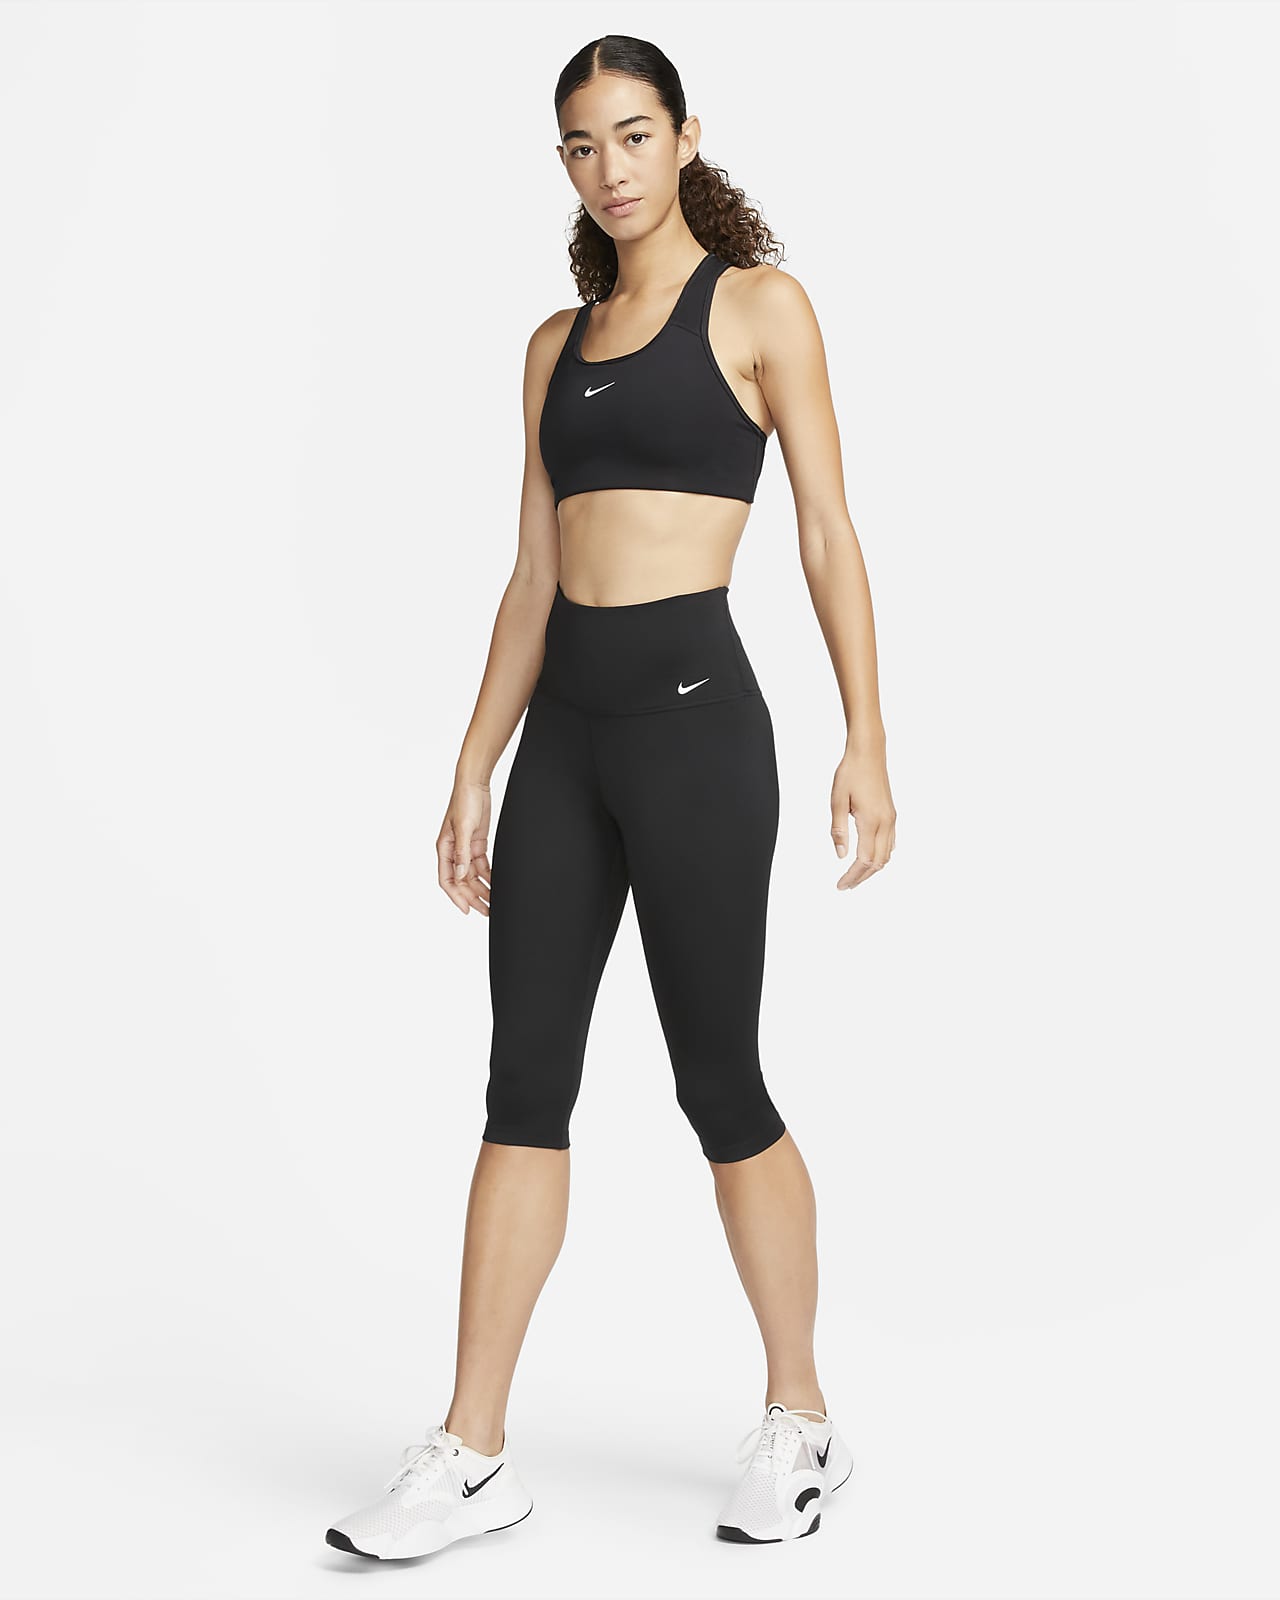 Nike One Women's High-Waisted Capri Leggings